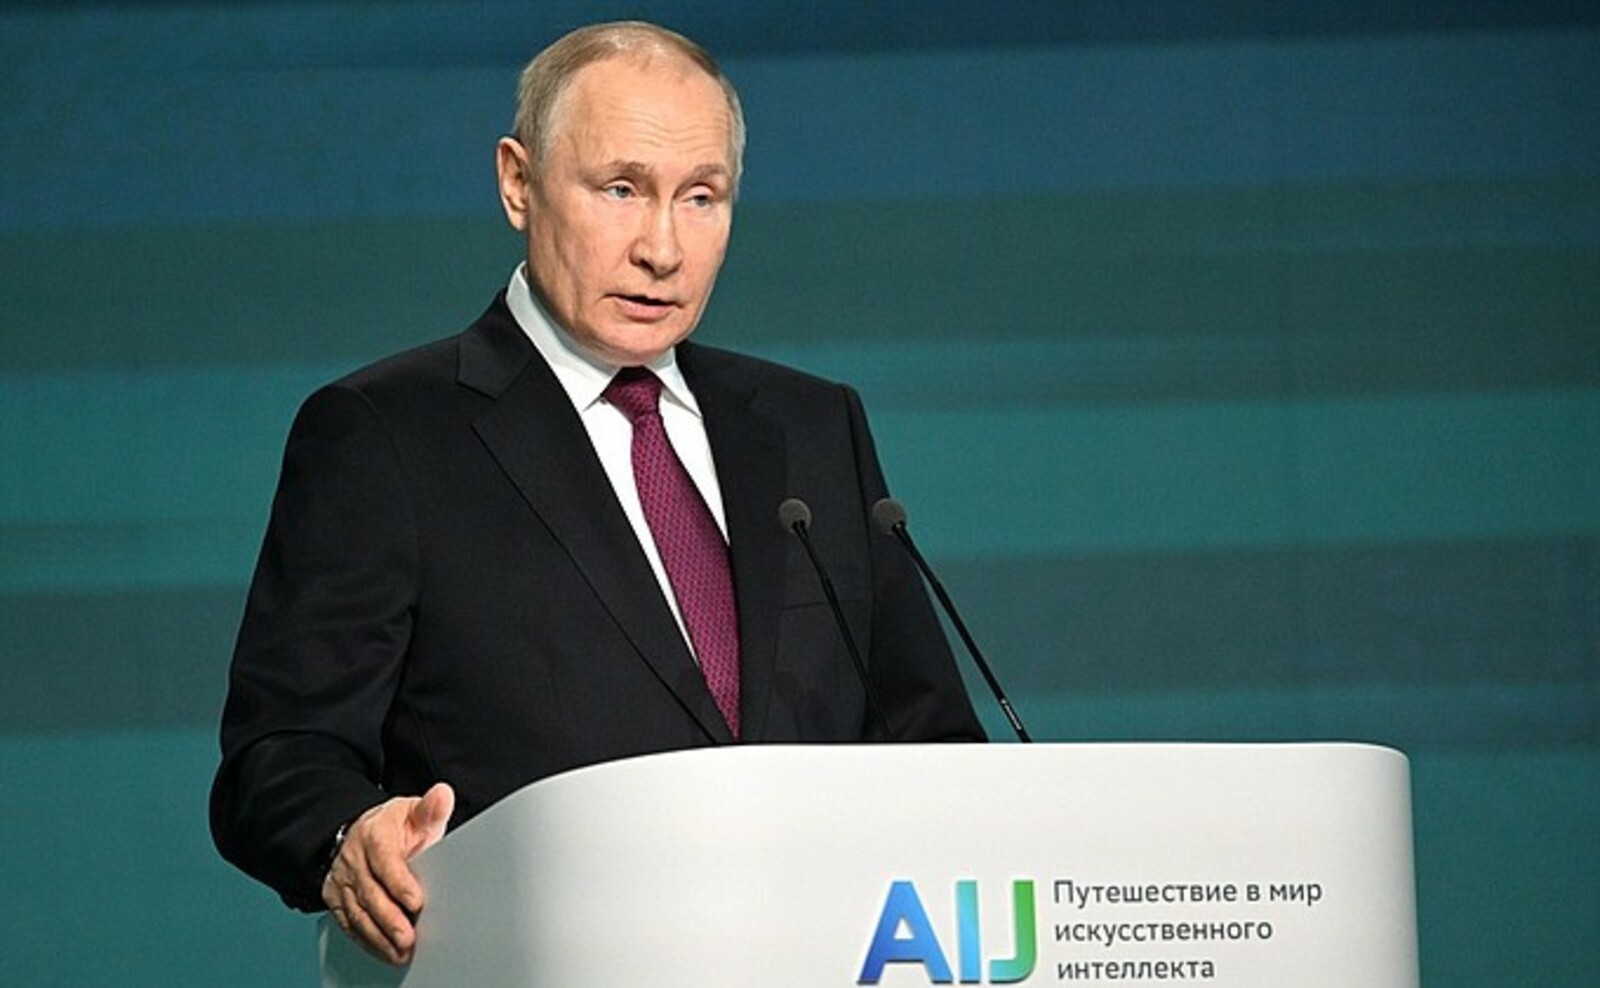 Путин заявил, что Россия будет и далее усиливать поддержку IT-отрасли